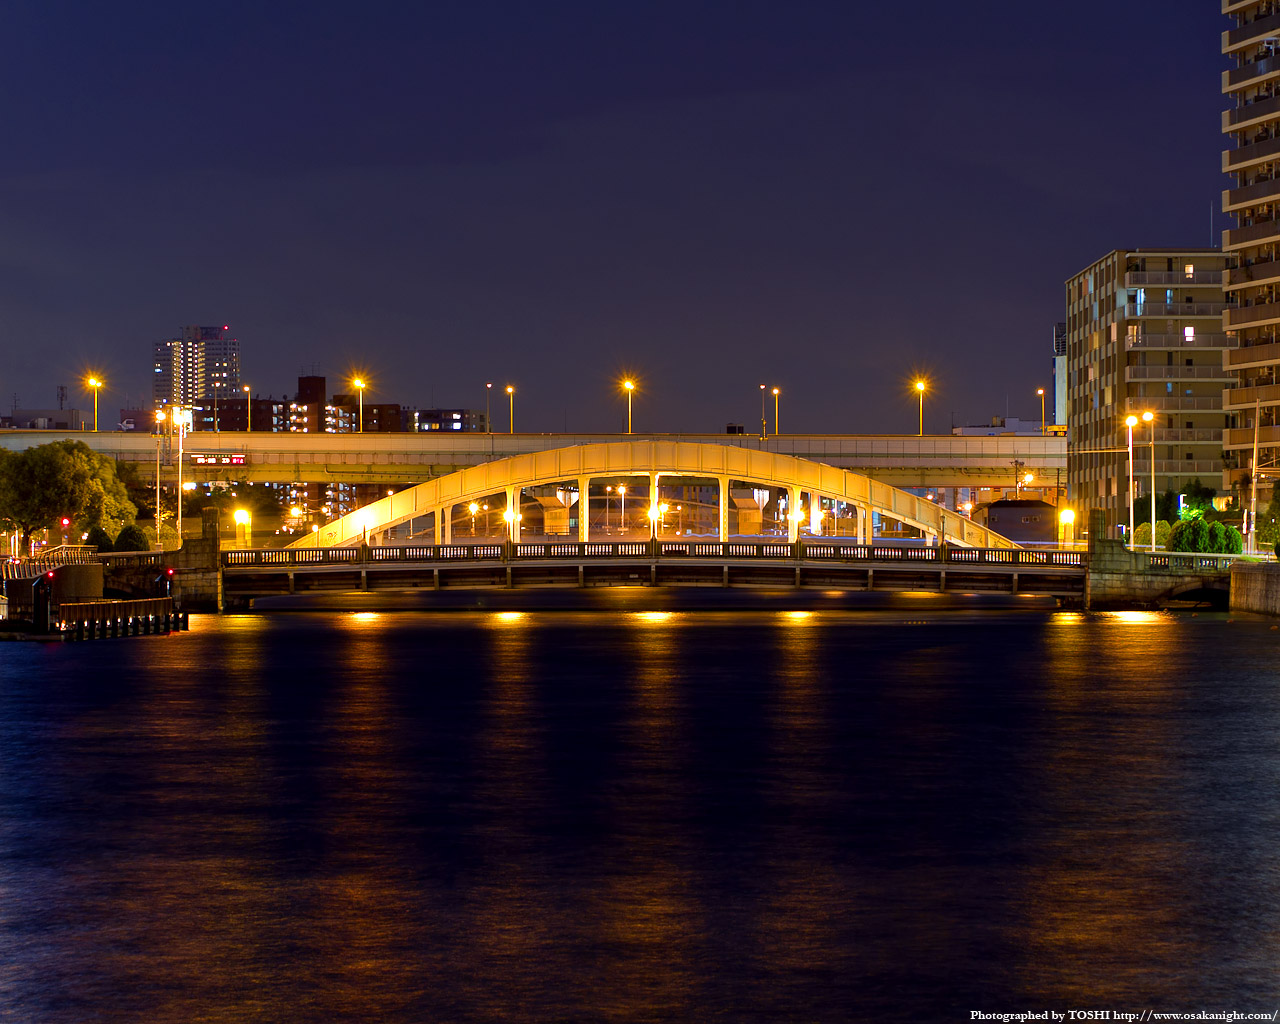 堂島大橋のライトアップ夜景